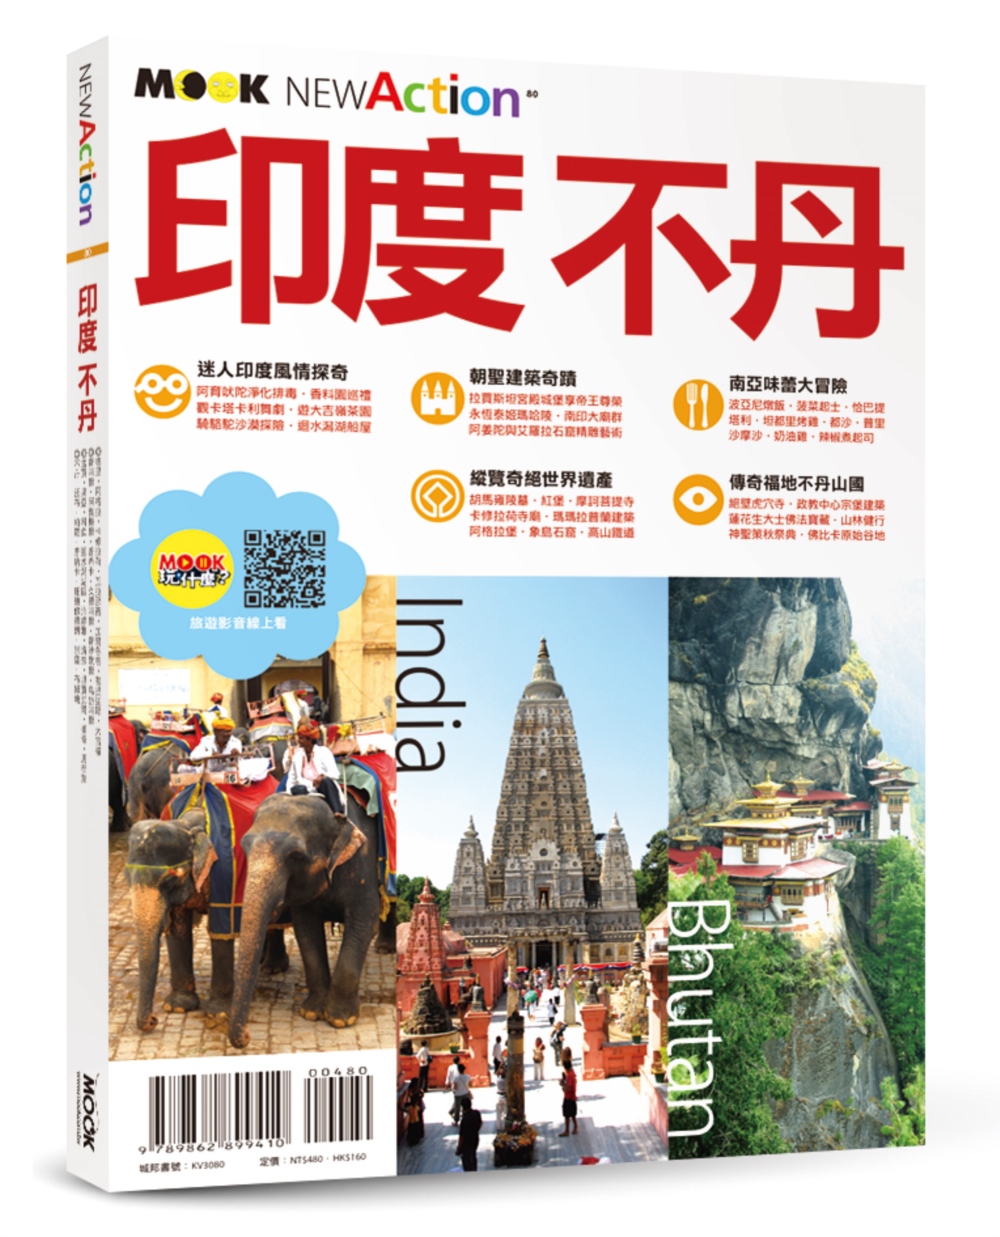 墨刻编辑部印度‧不丹 旅游玩樂資訊就看這一本